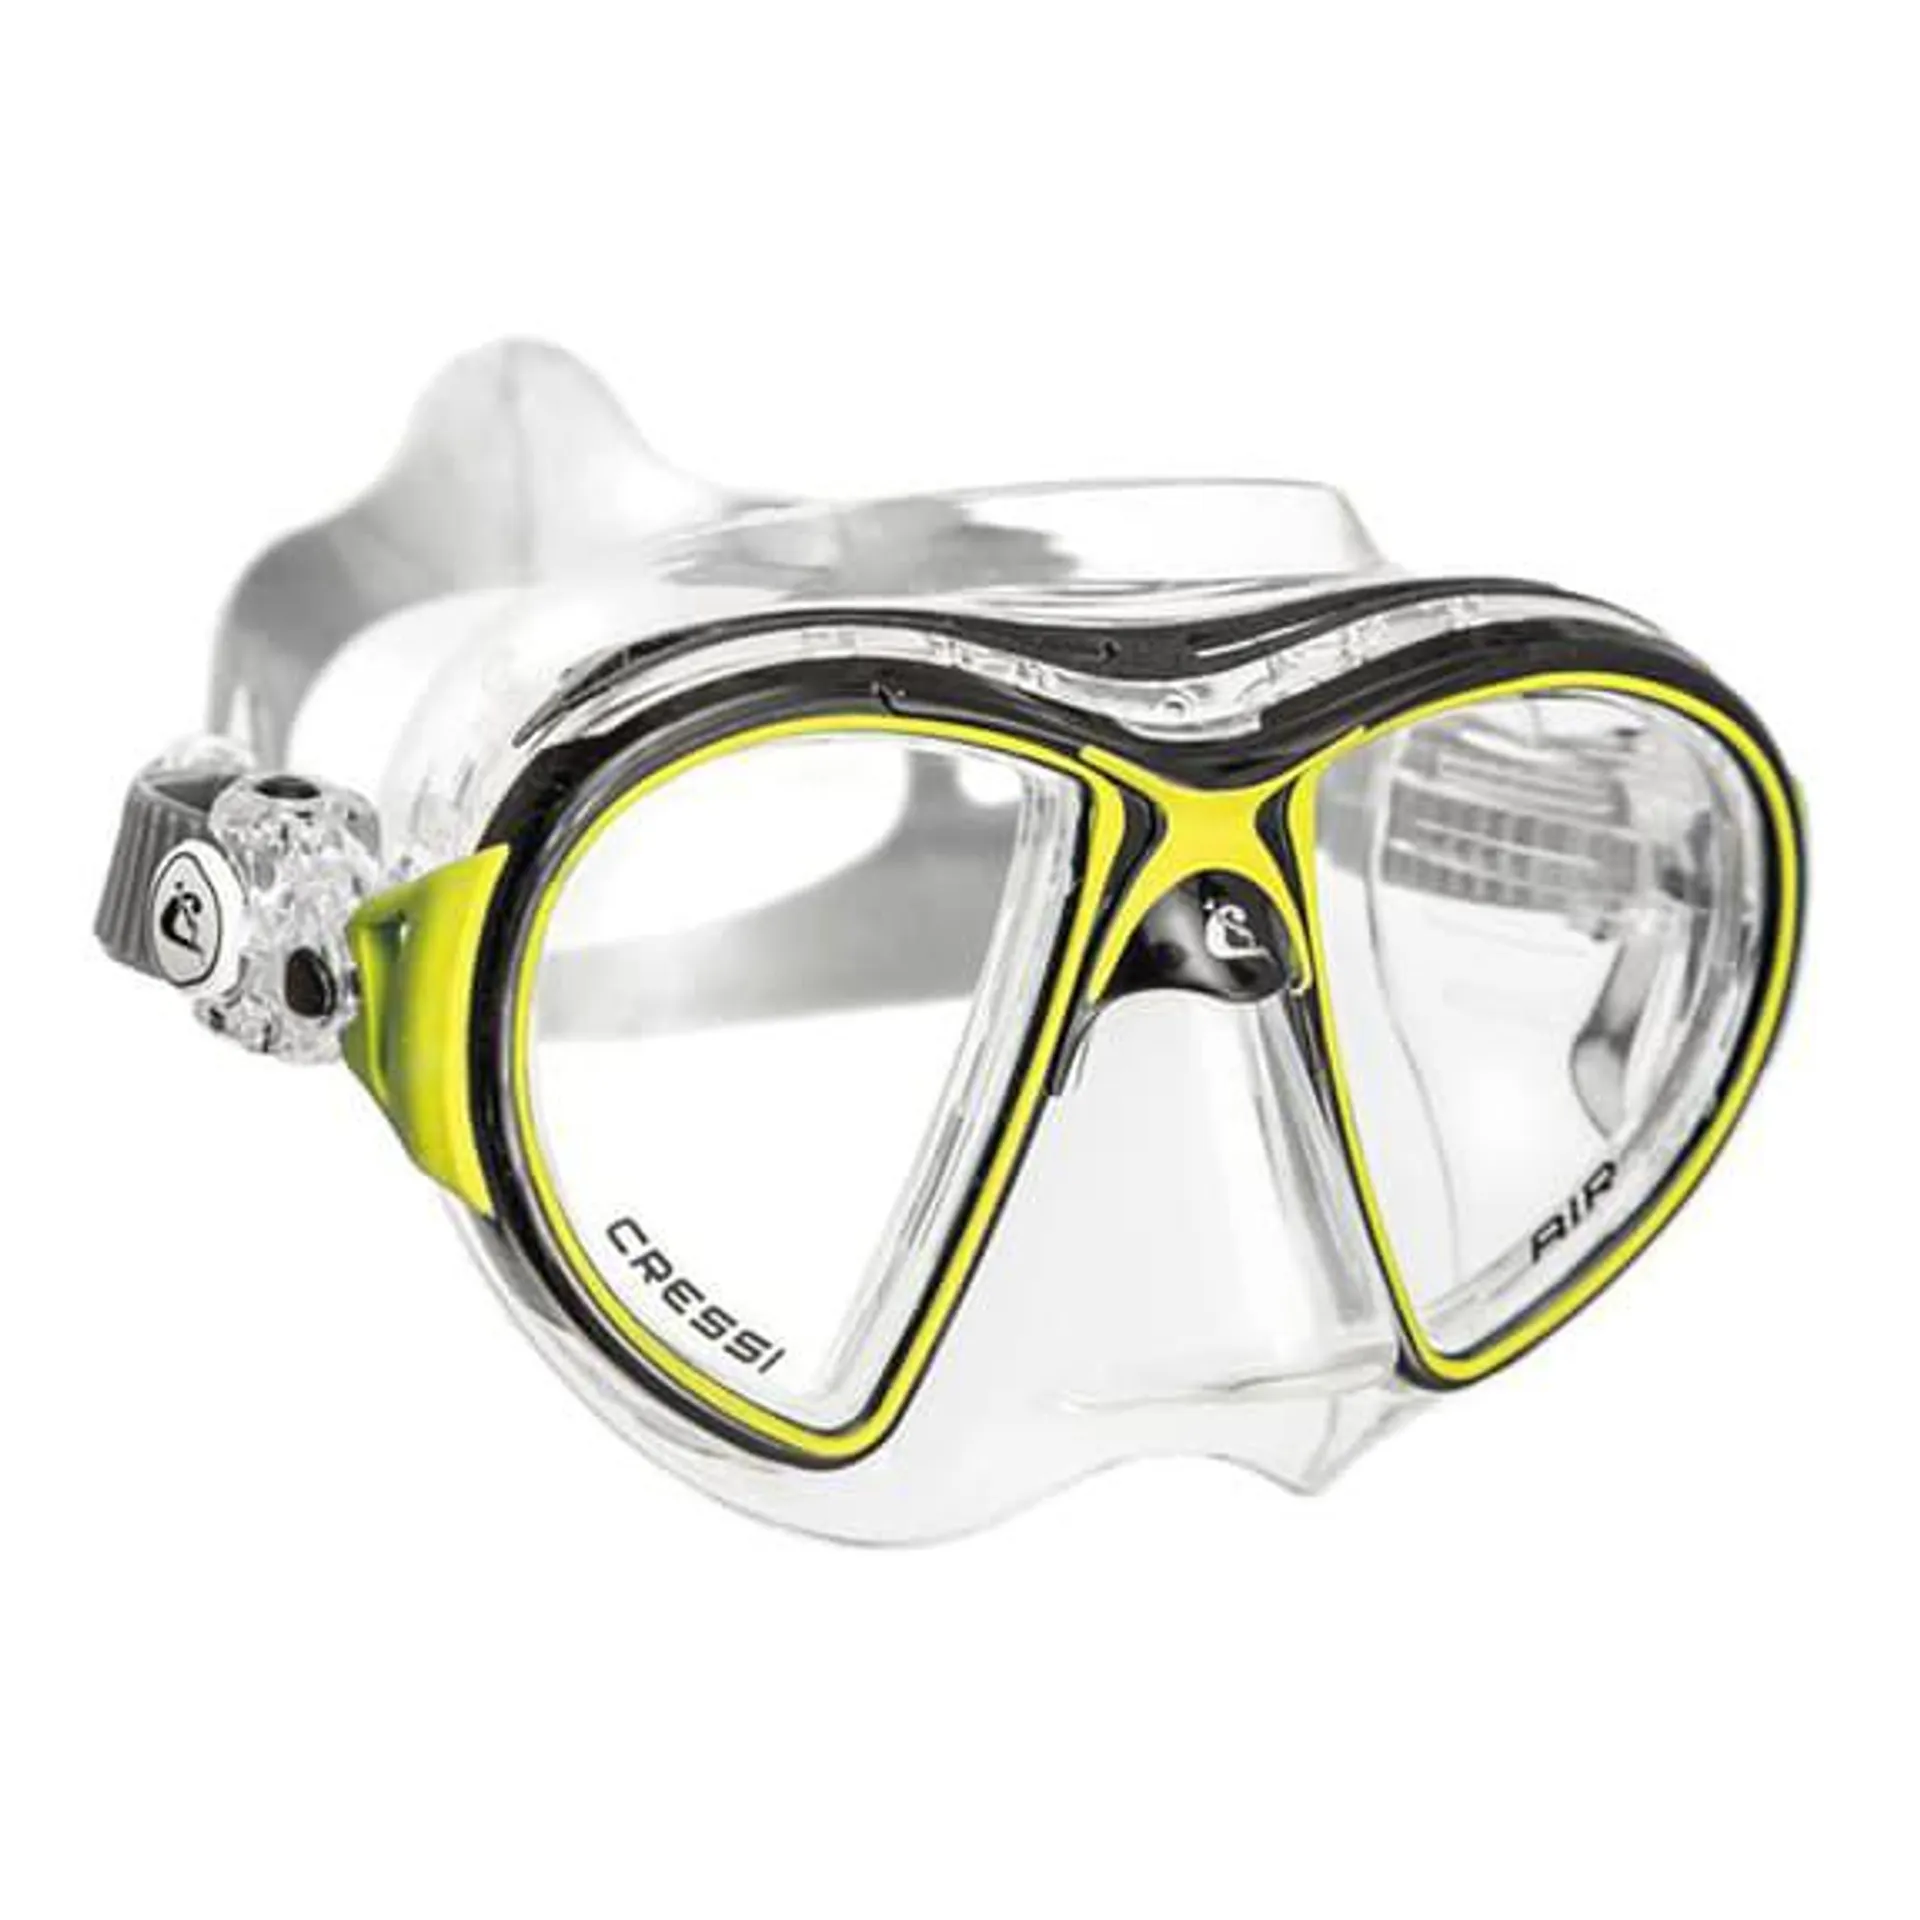 Masque de plongée Cressi Air noir jaune blanc avec verres transparents